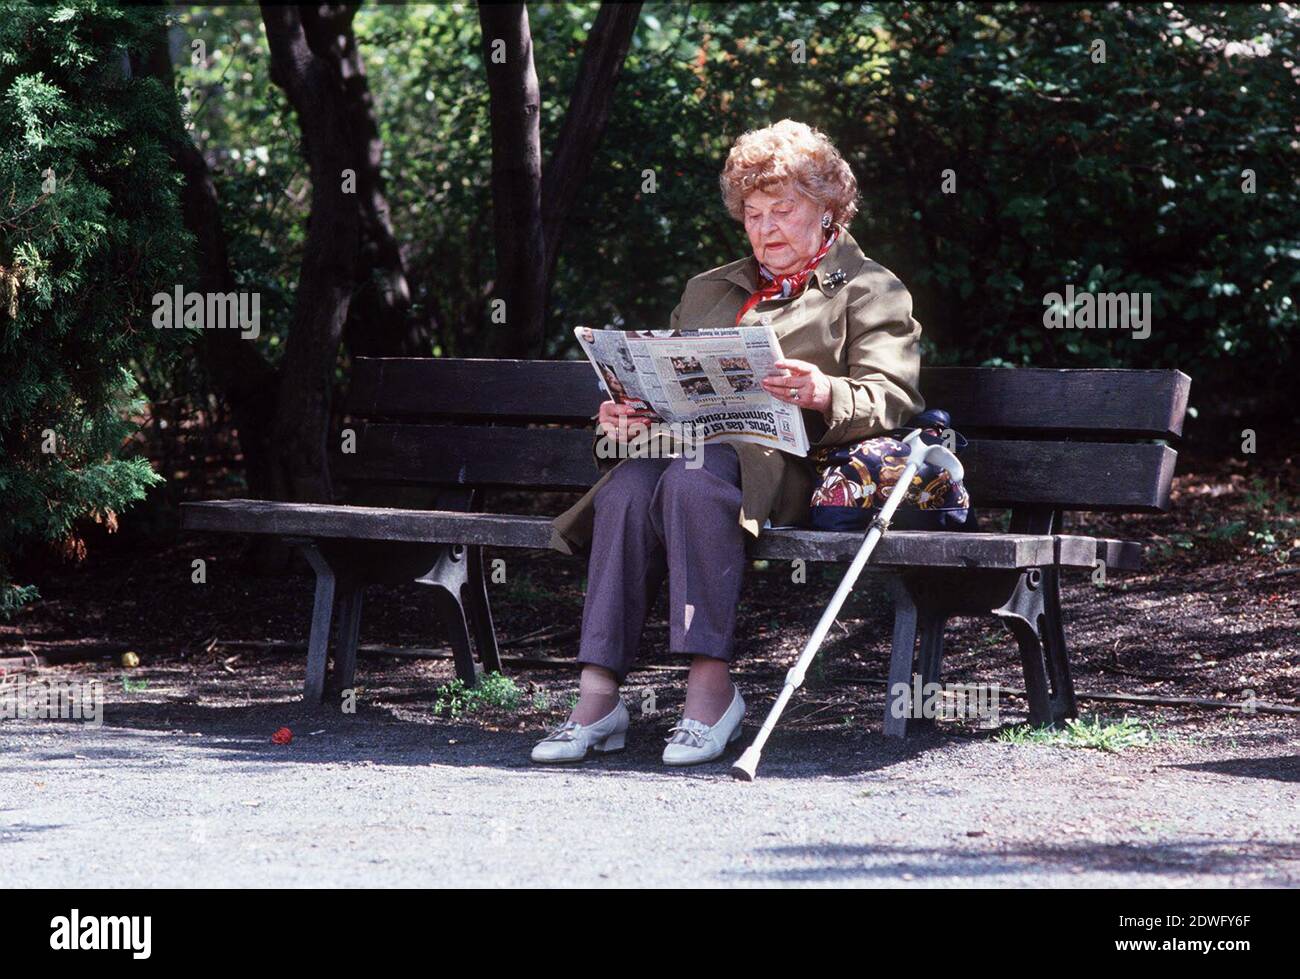 EINE SENIORIN beim Zeitungslesen auf einer Parkbank, Symbolfoto, circa 1998. SENIORIN, un pensionato che legge un giornale su una panchina del parco, foto simbolo, circa 1998. Foto Stock